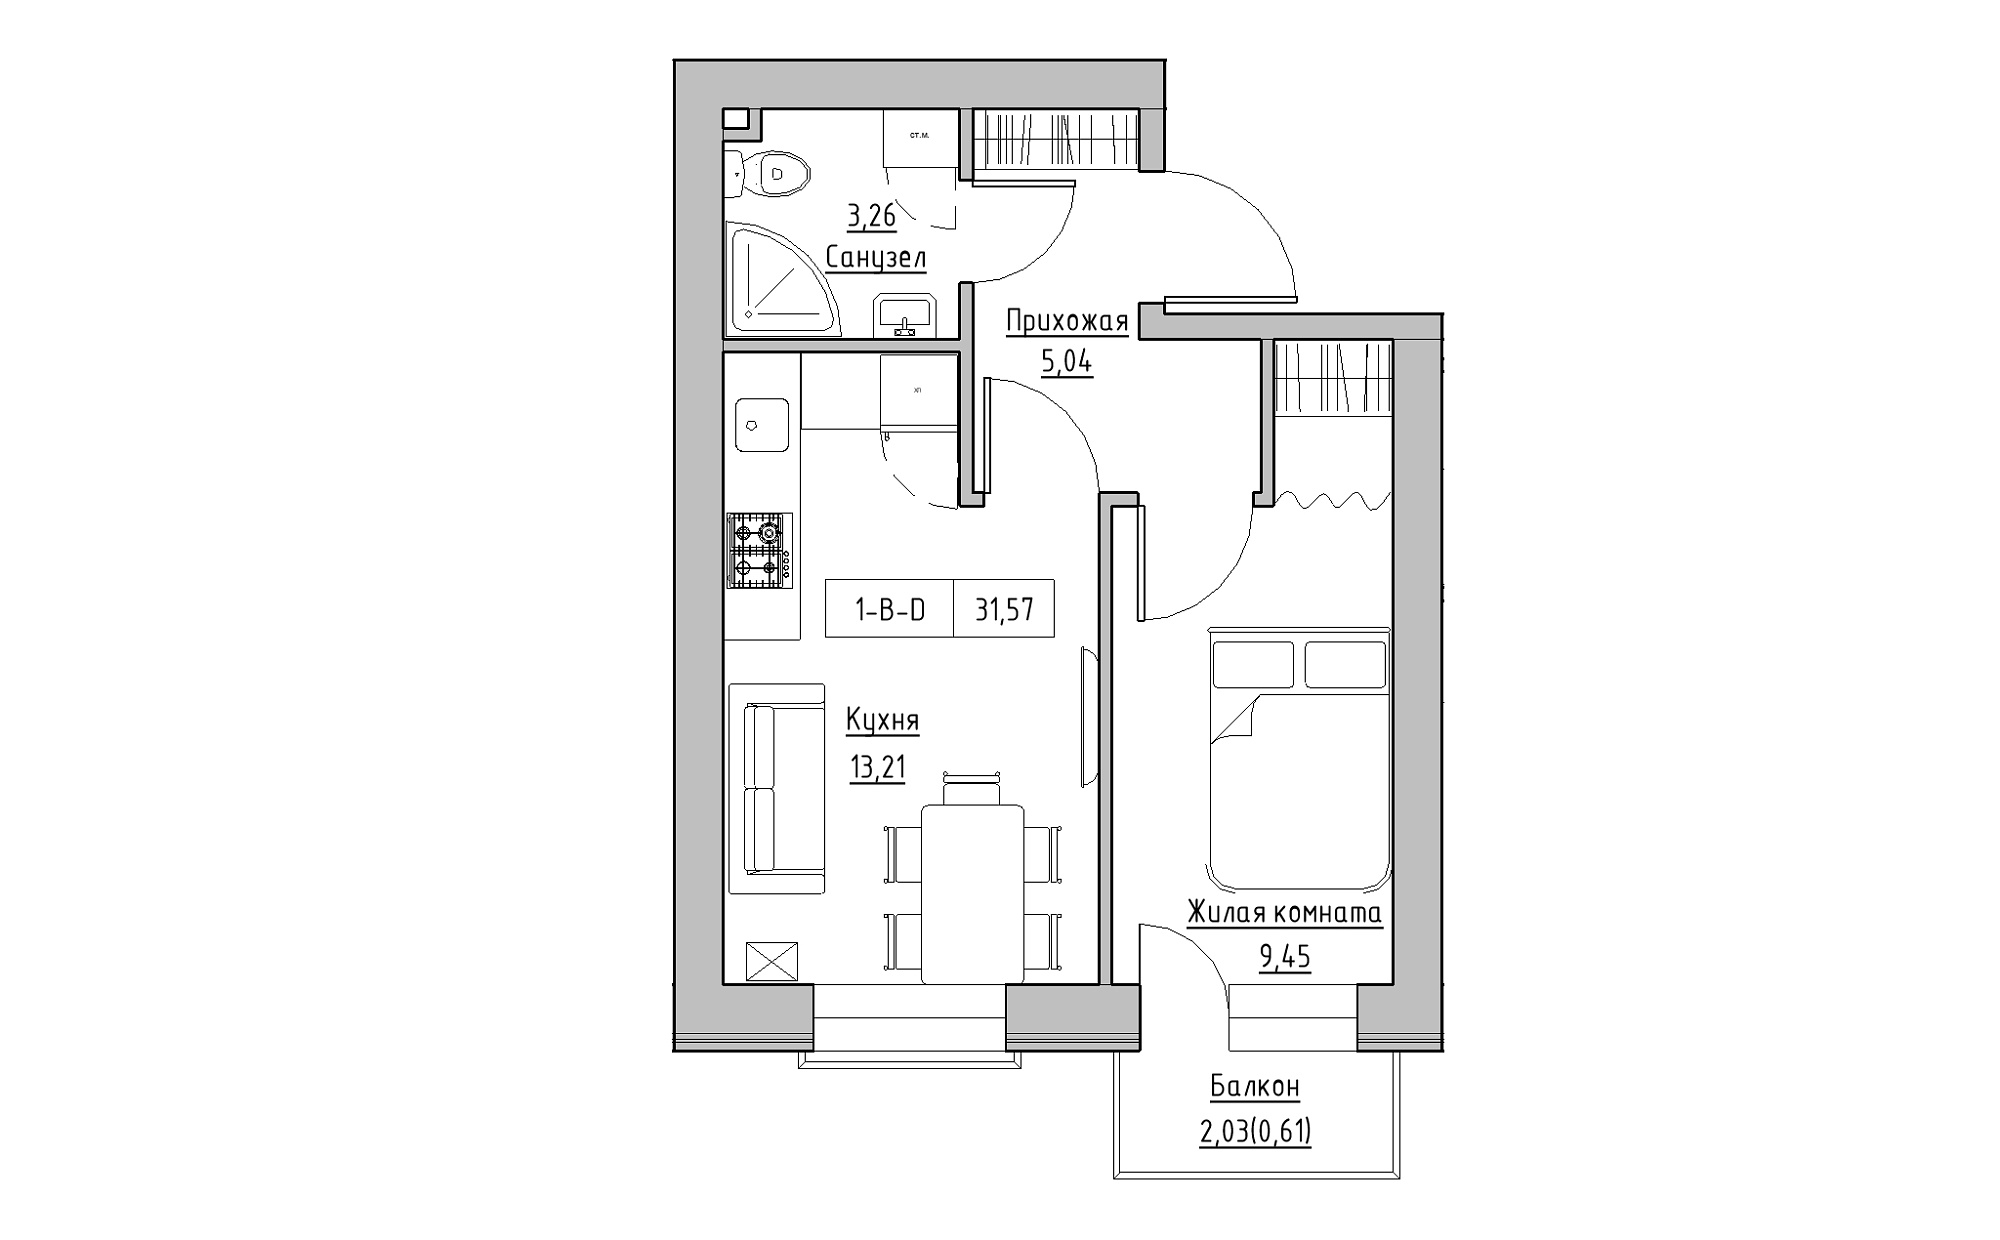 Планировка 1-к квартира площей 31.57м2, KS-022-04/0003.